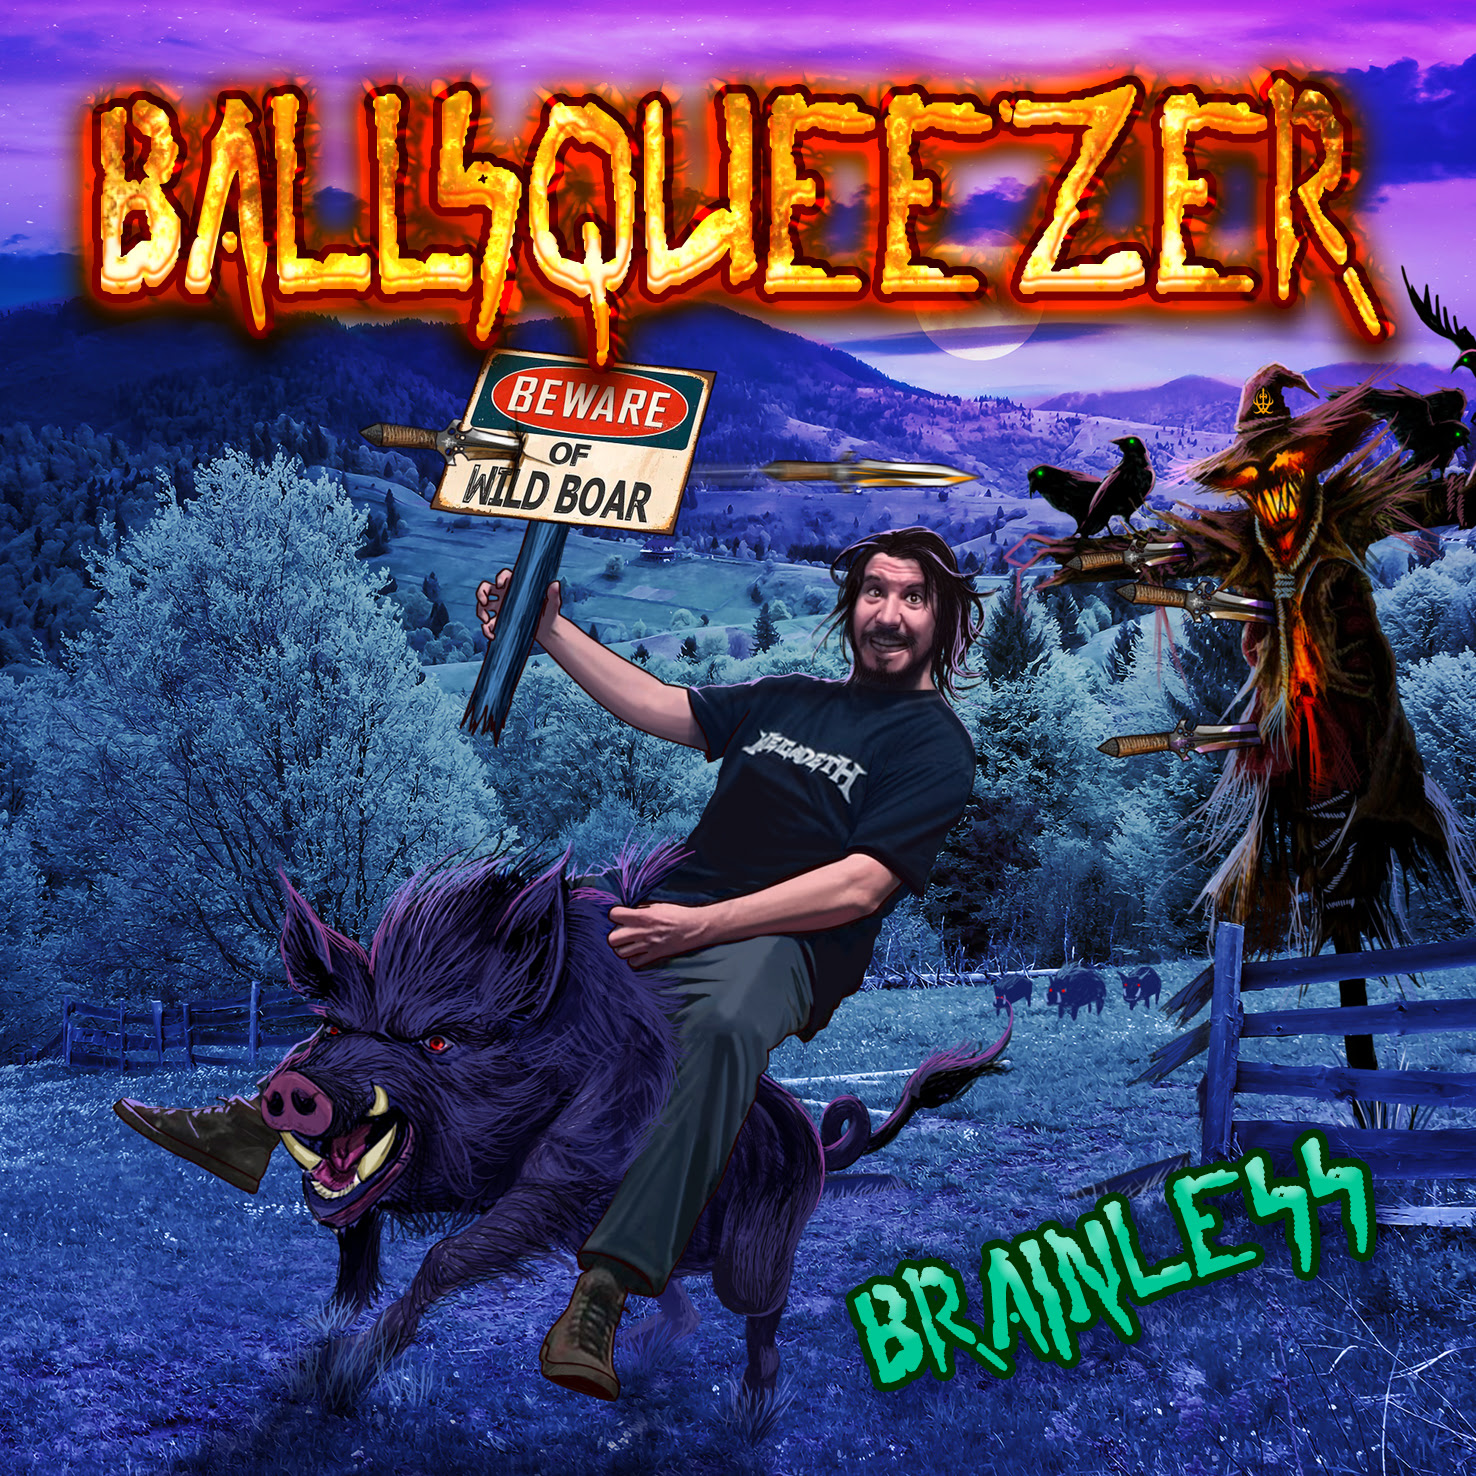 BALLSQUEEZER - "Brainless"